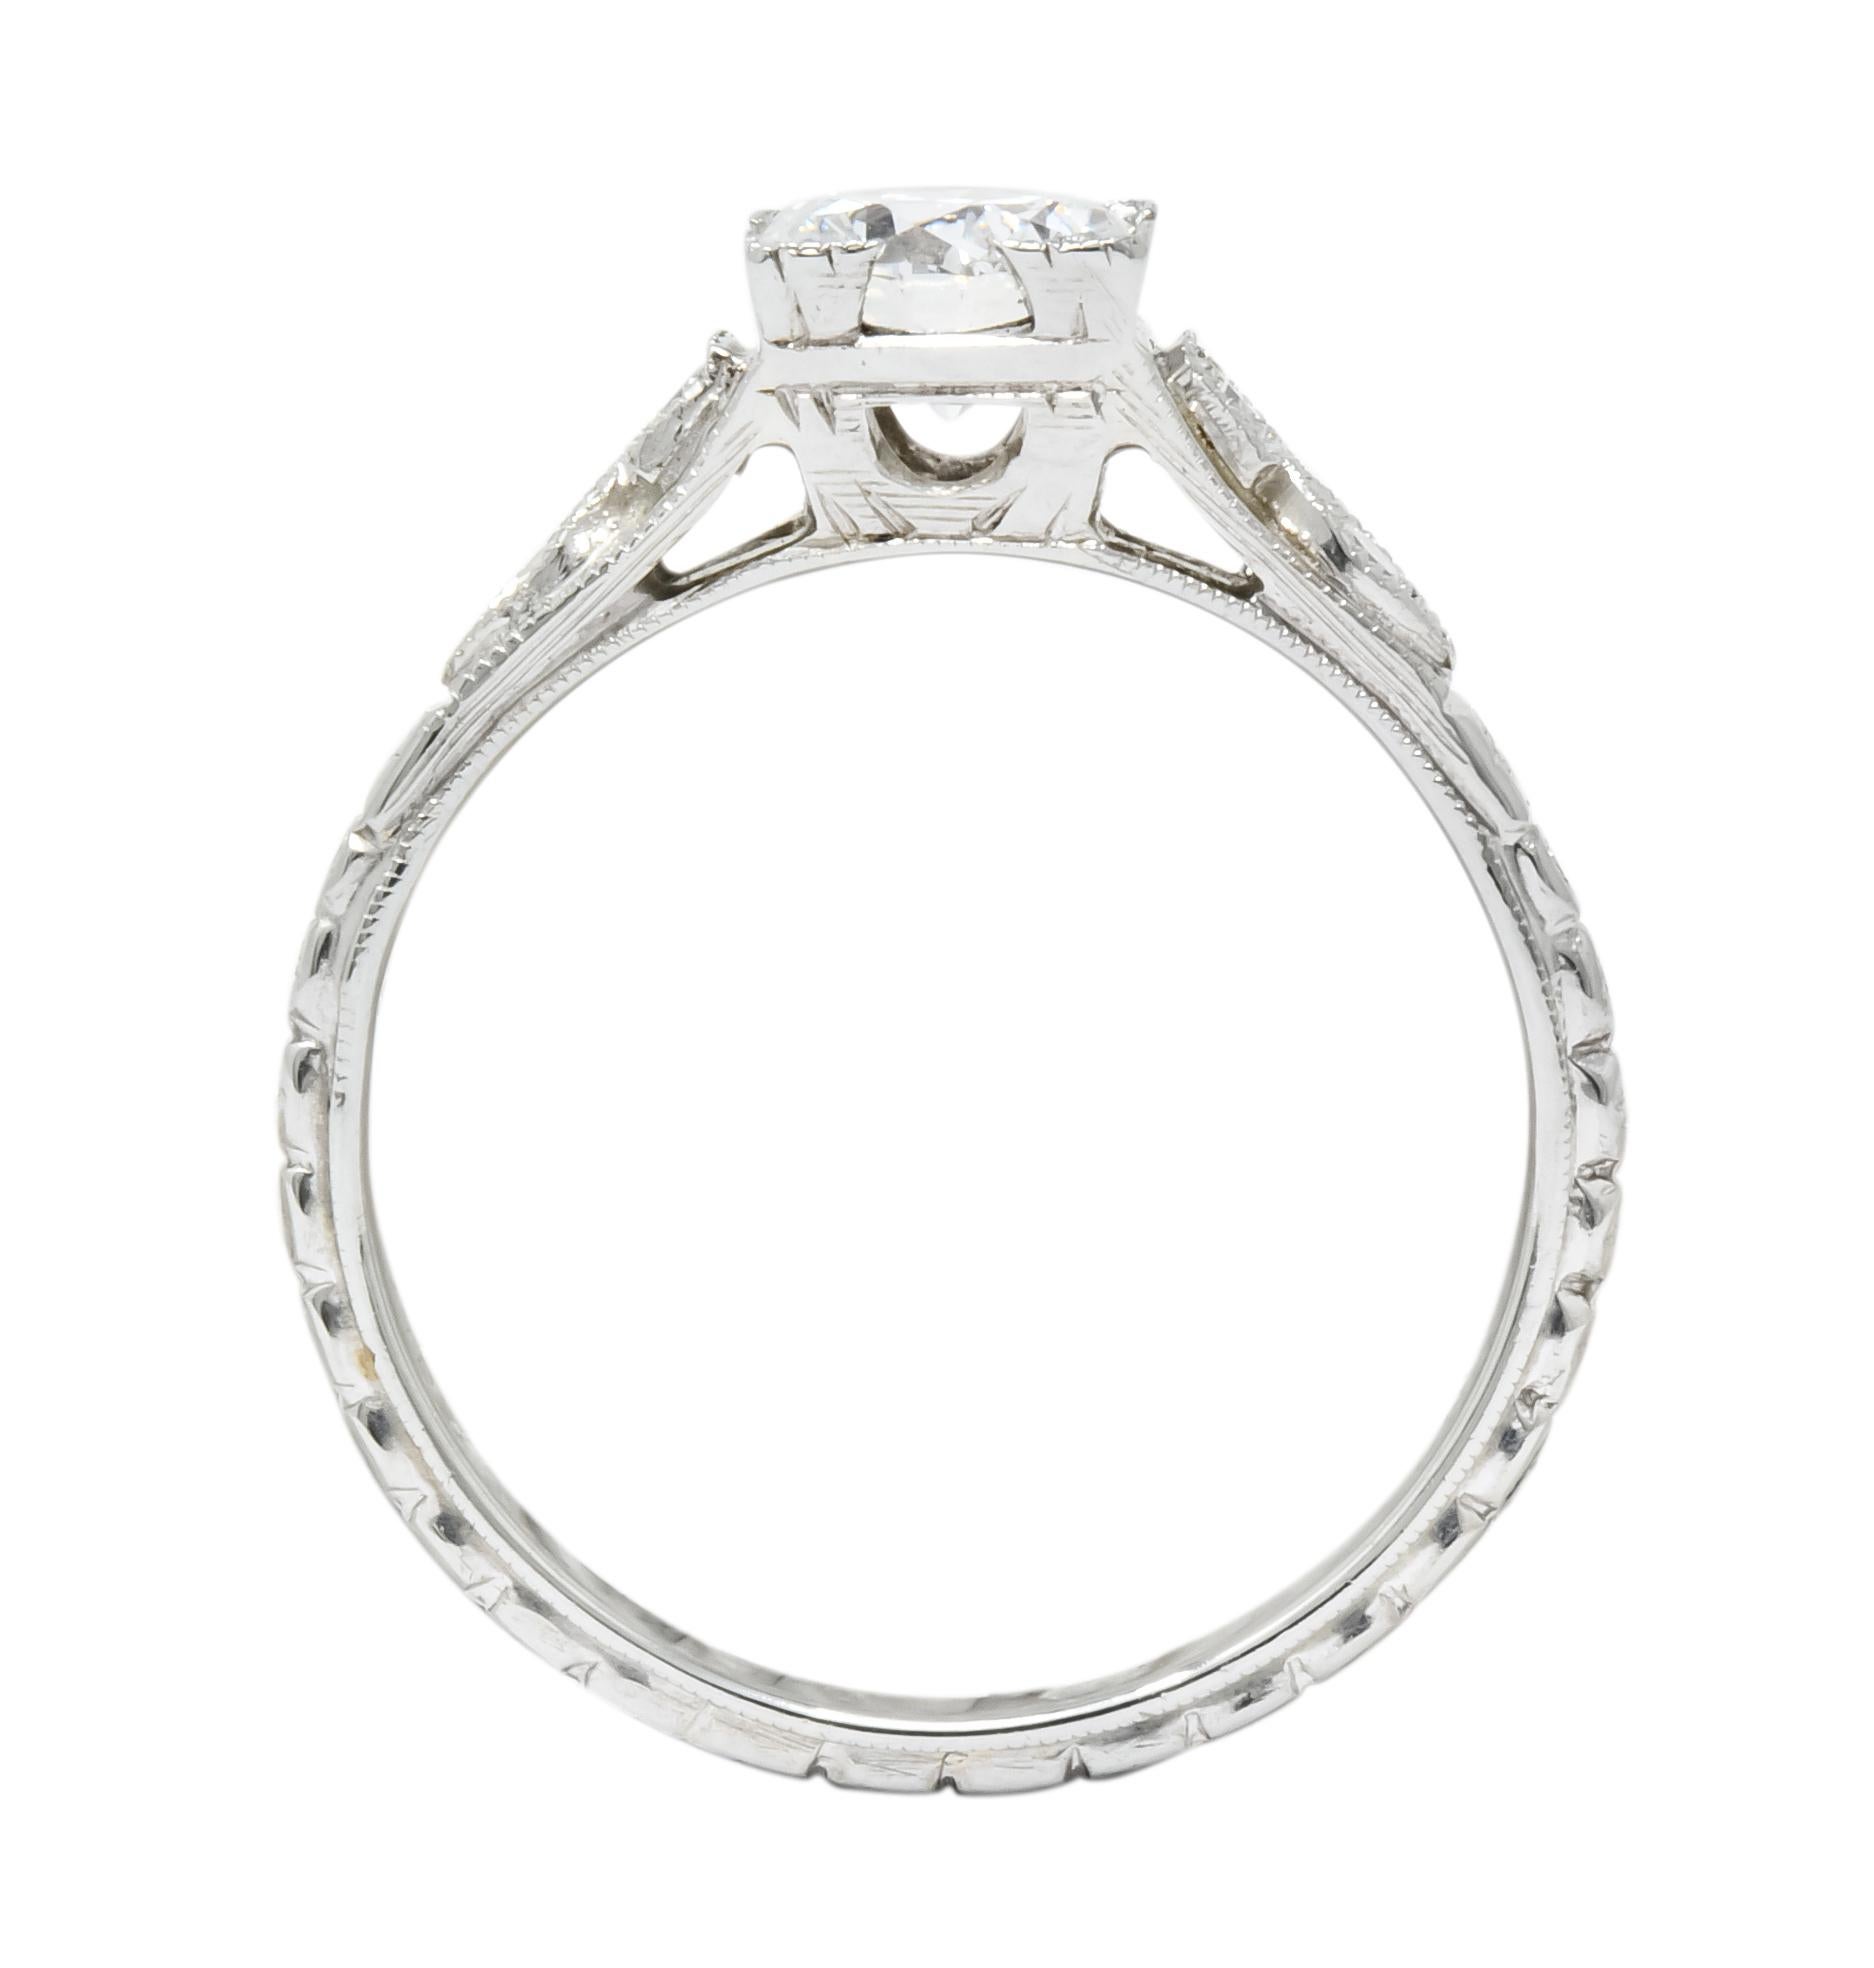 White Rose Mfg. Co. Art Deco Diamond 18 Karat White Gold Engagement Ring 2